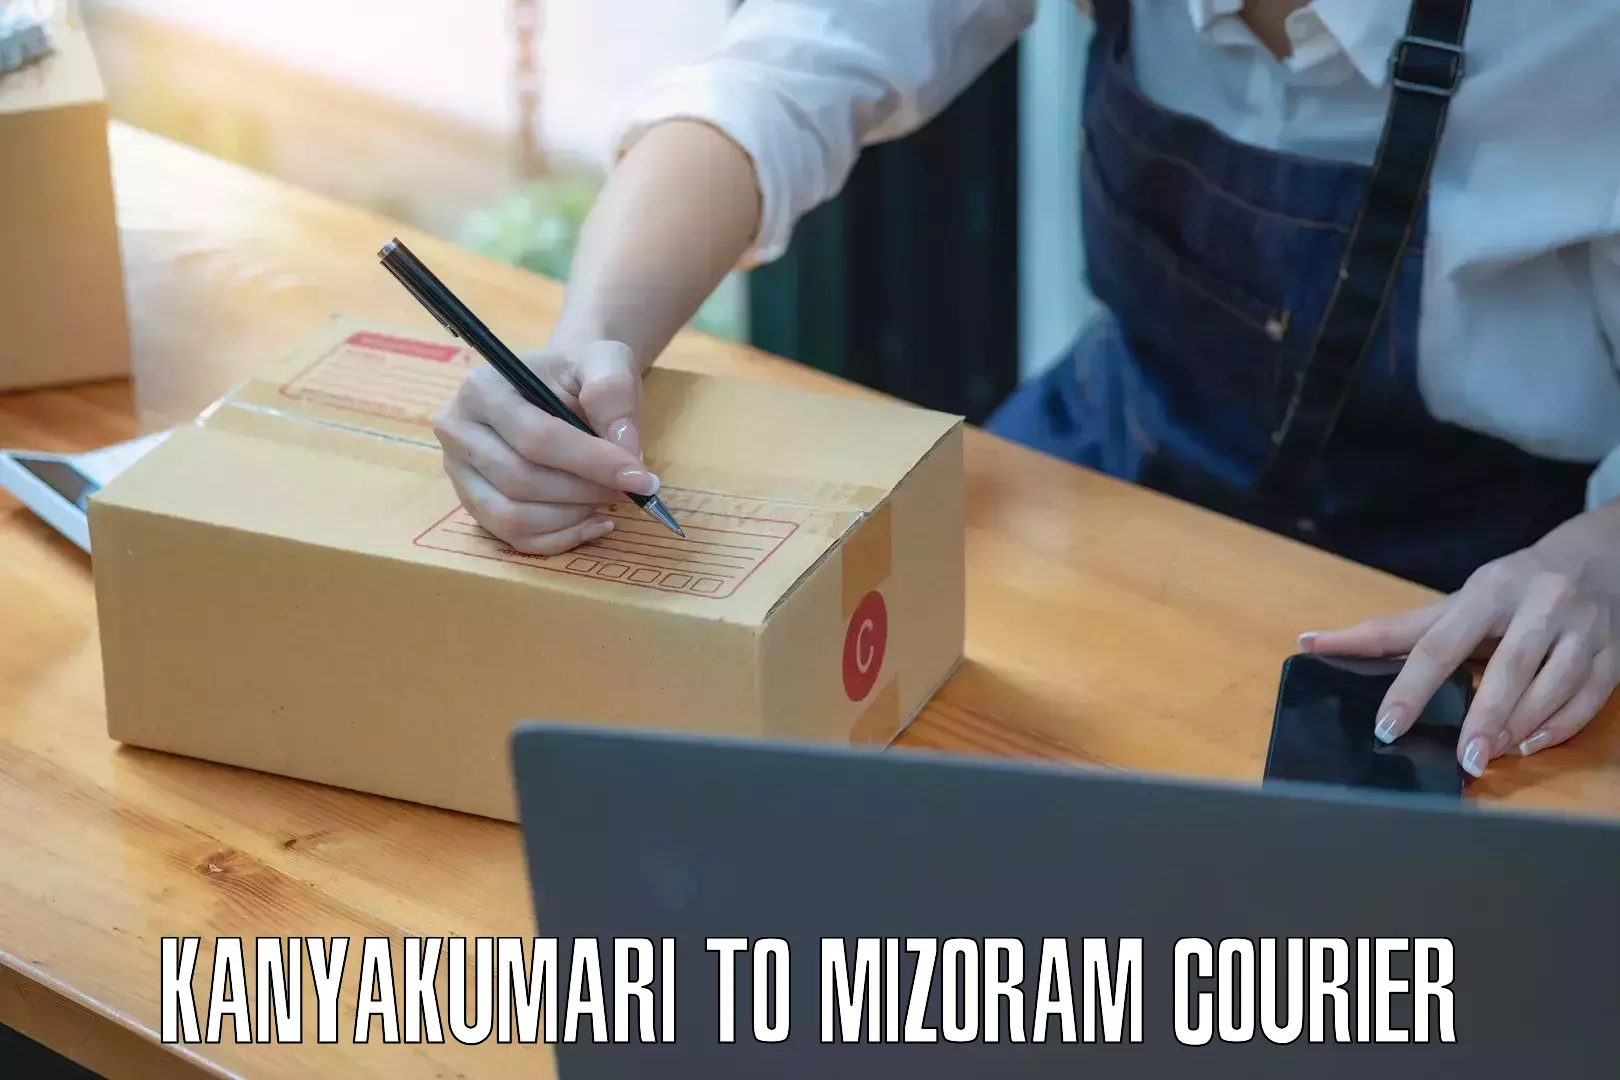 Courier insurance Kanyakumari to Aizawl